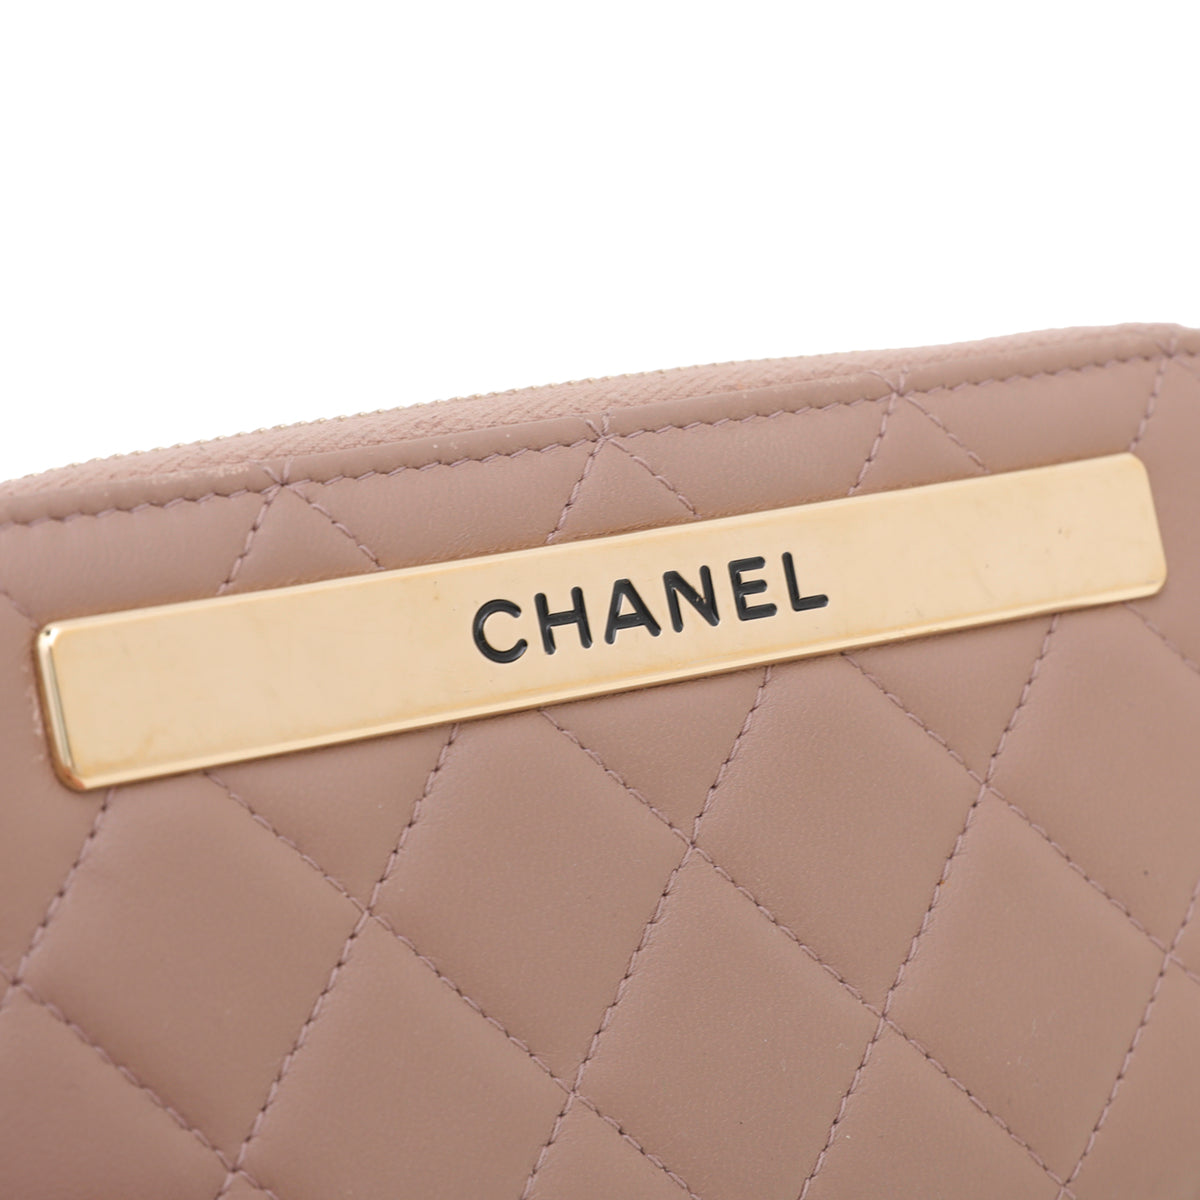 Chanel Light Brown Trendy Zip Around Wallet